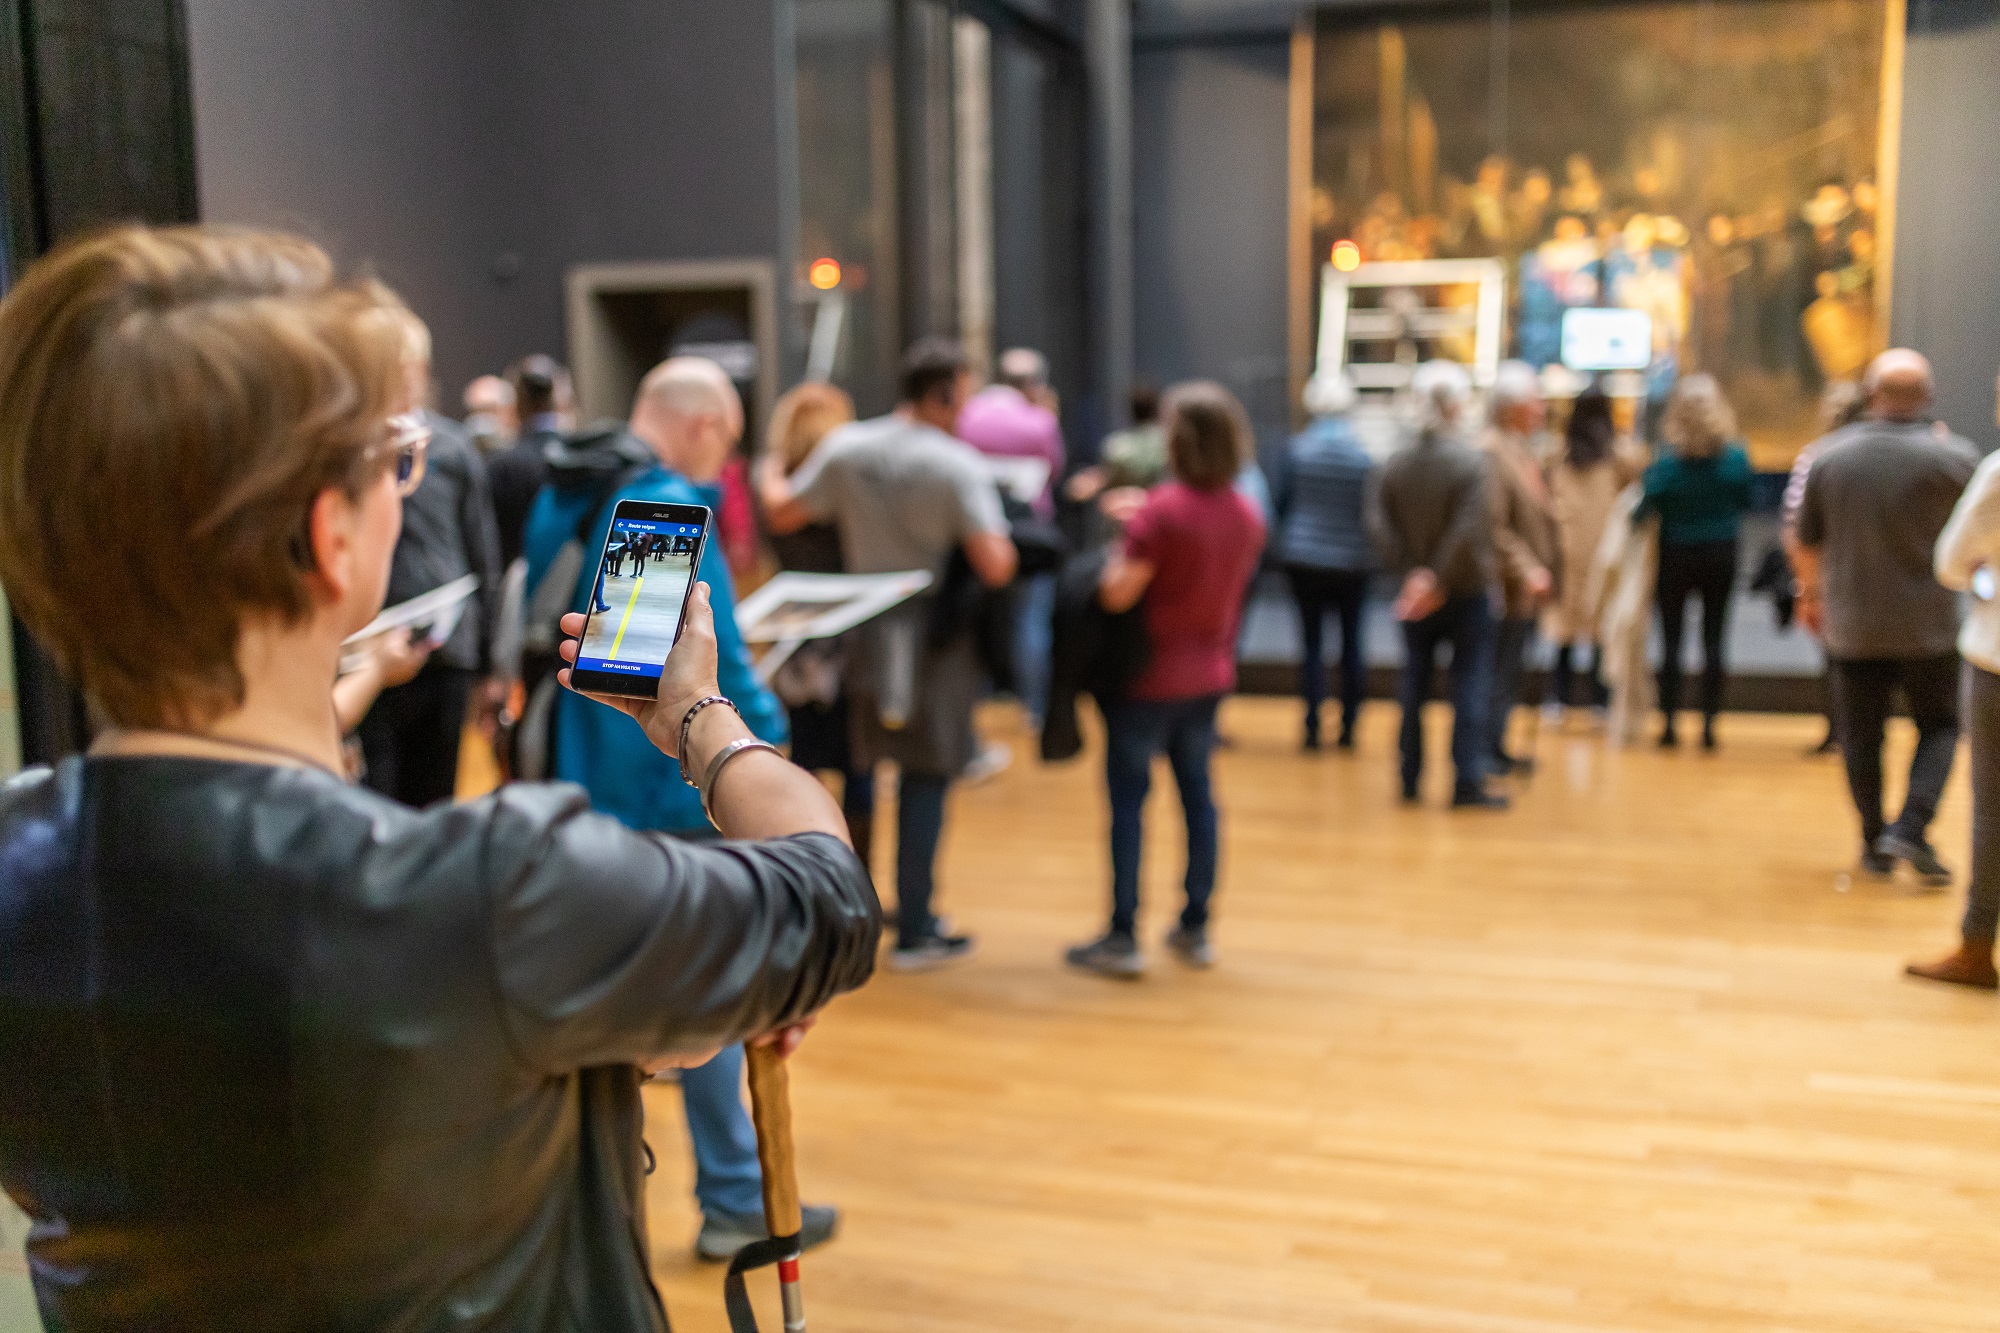 Vrouw met taststok gebruikt smartphone als hulpmiddel in museum